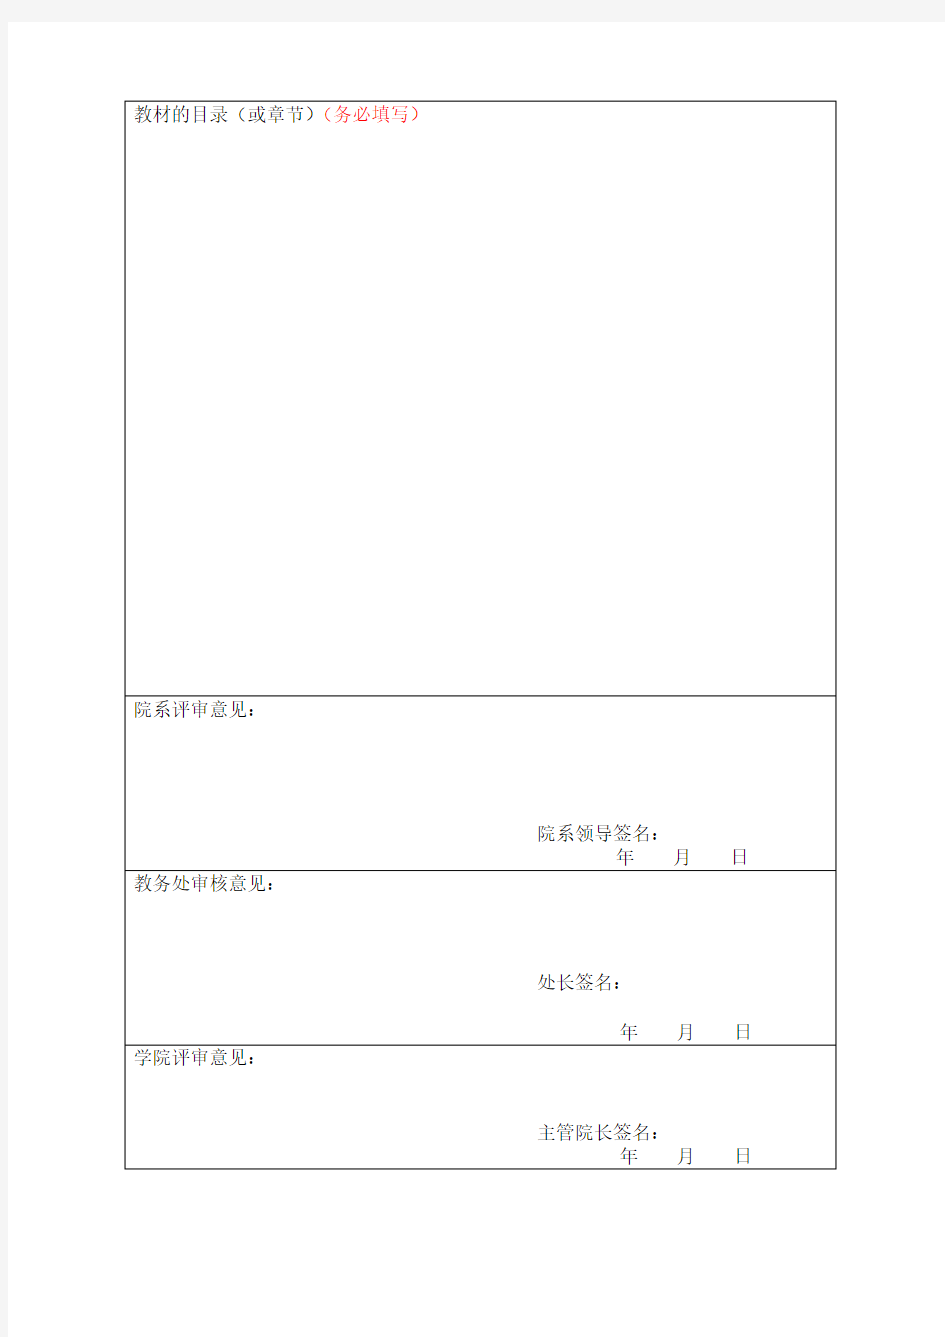 广州美术学院自编教材资助项目申请表